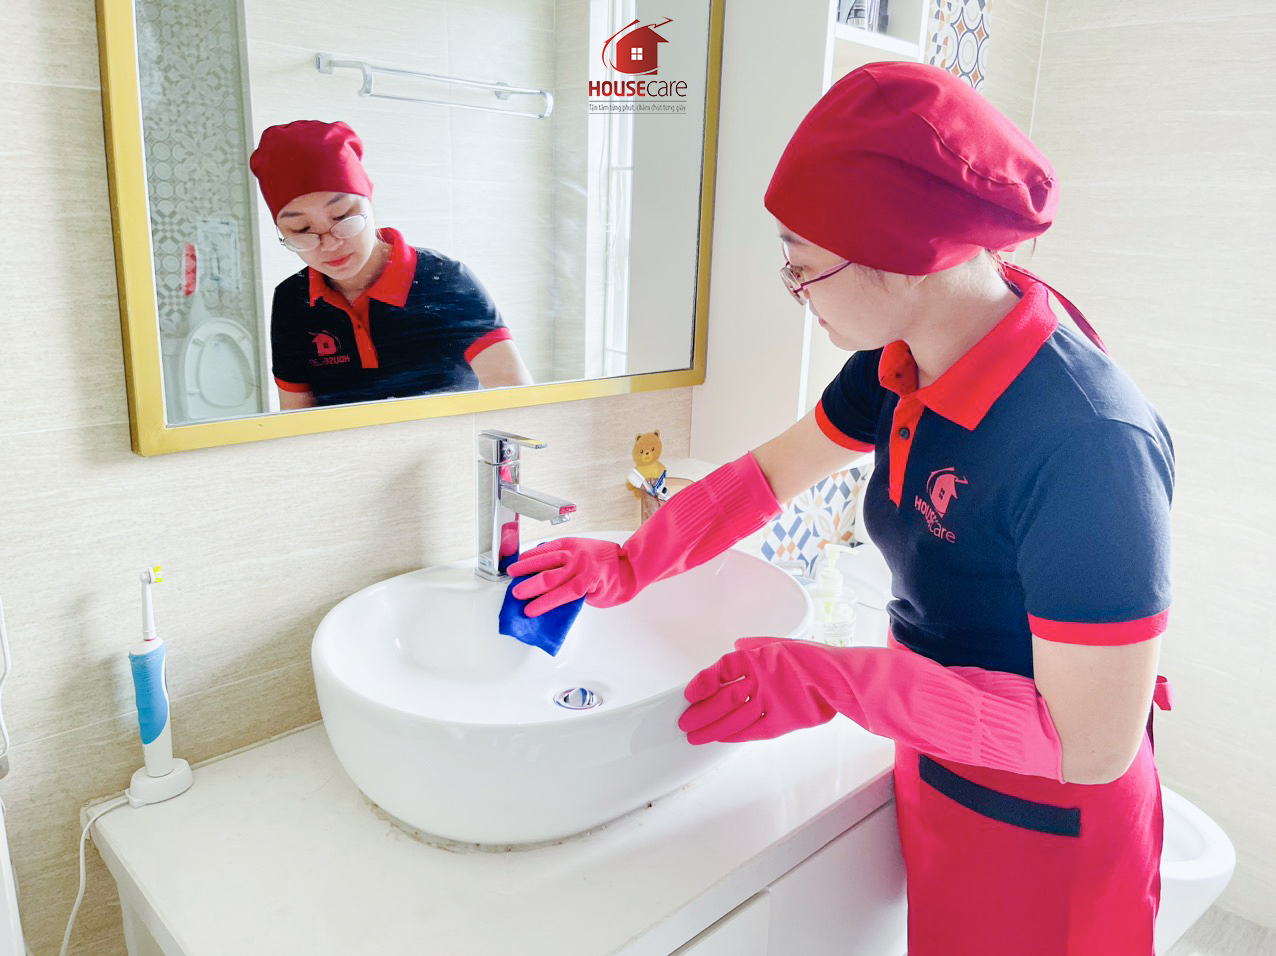 Dịch vụ vệ sinh nhà ở Housecare luôn dọn dẹp một cách tốt nhất và sạch sẽ nhất